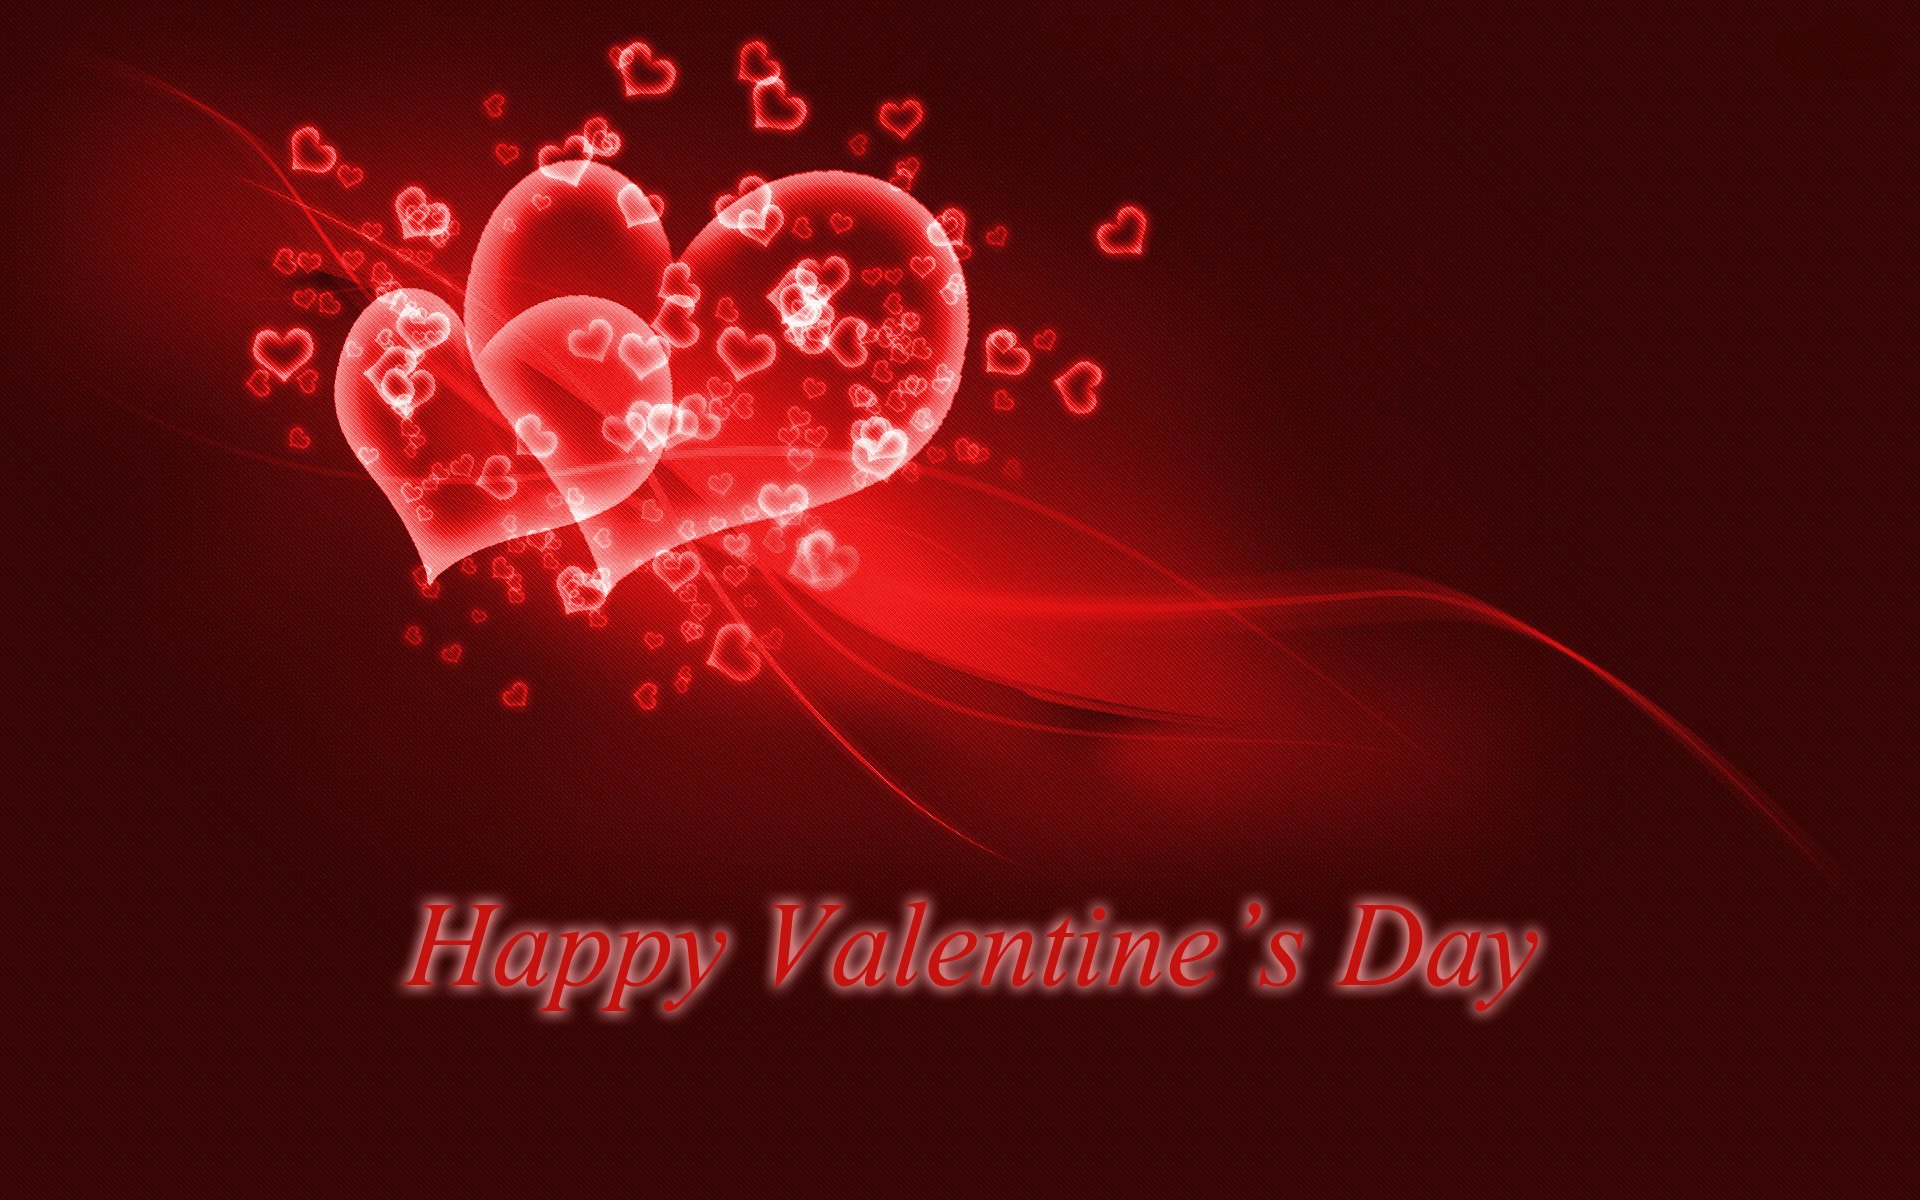 foto di san valentino sfondi,rosso,cuore,san valentino,testo,amore